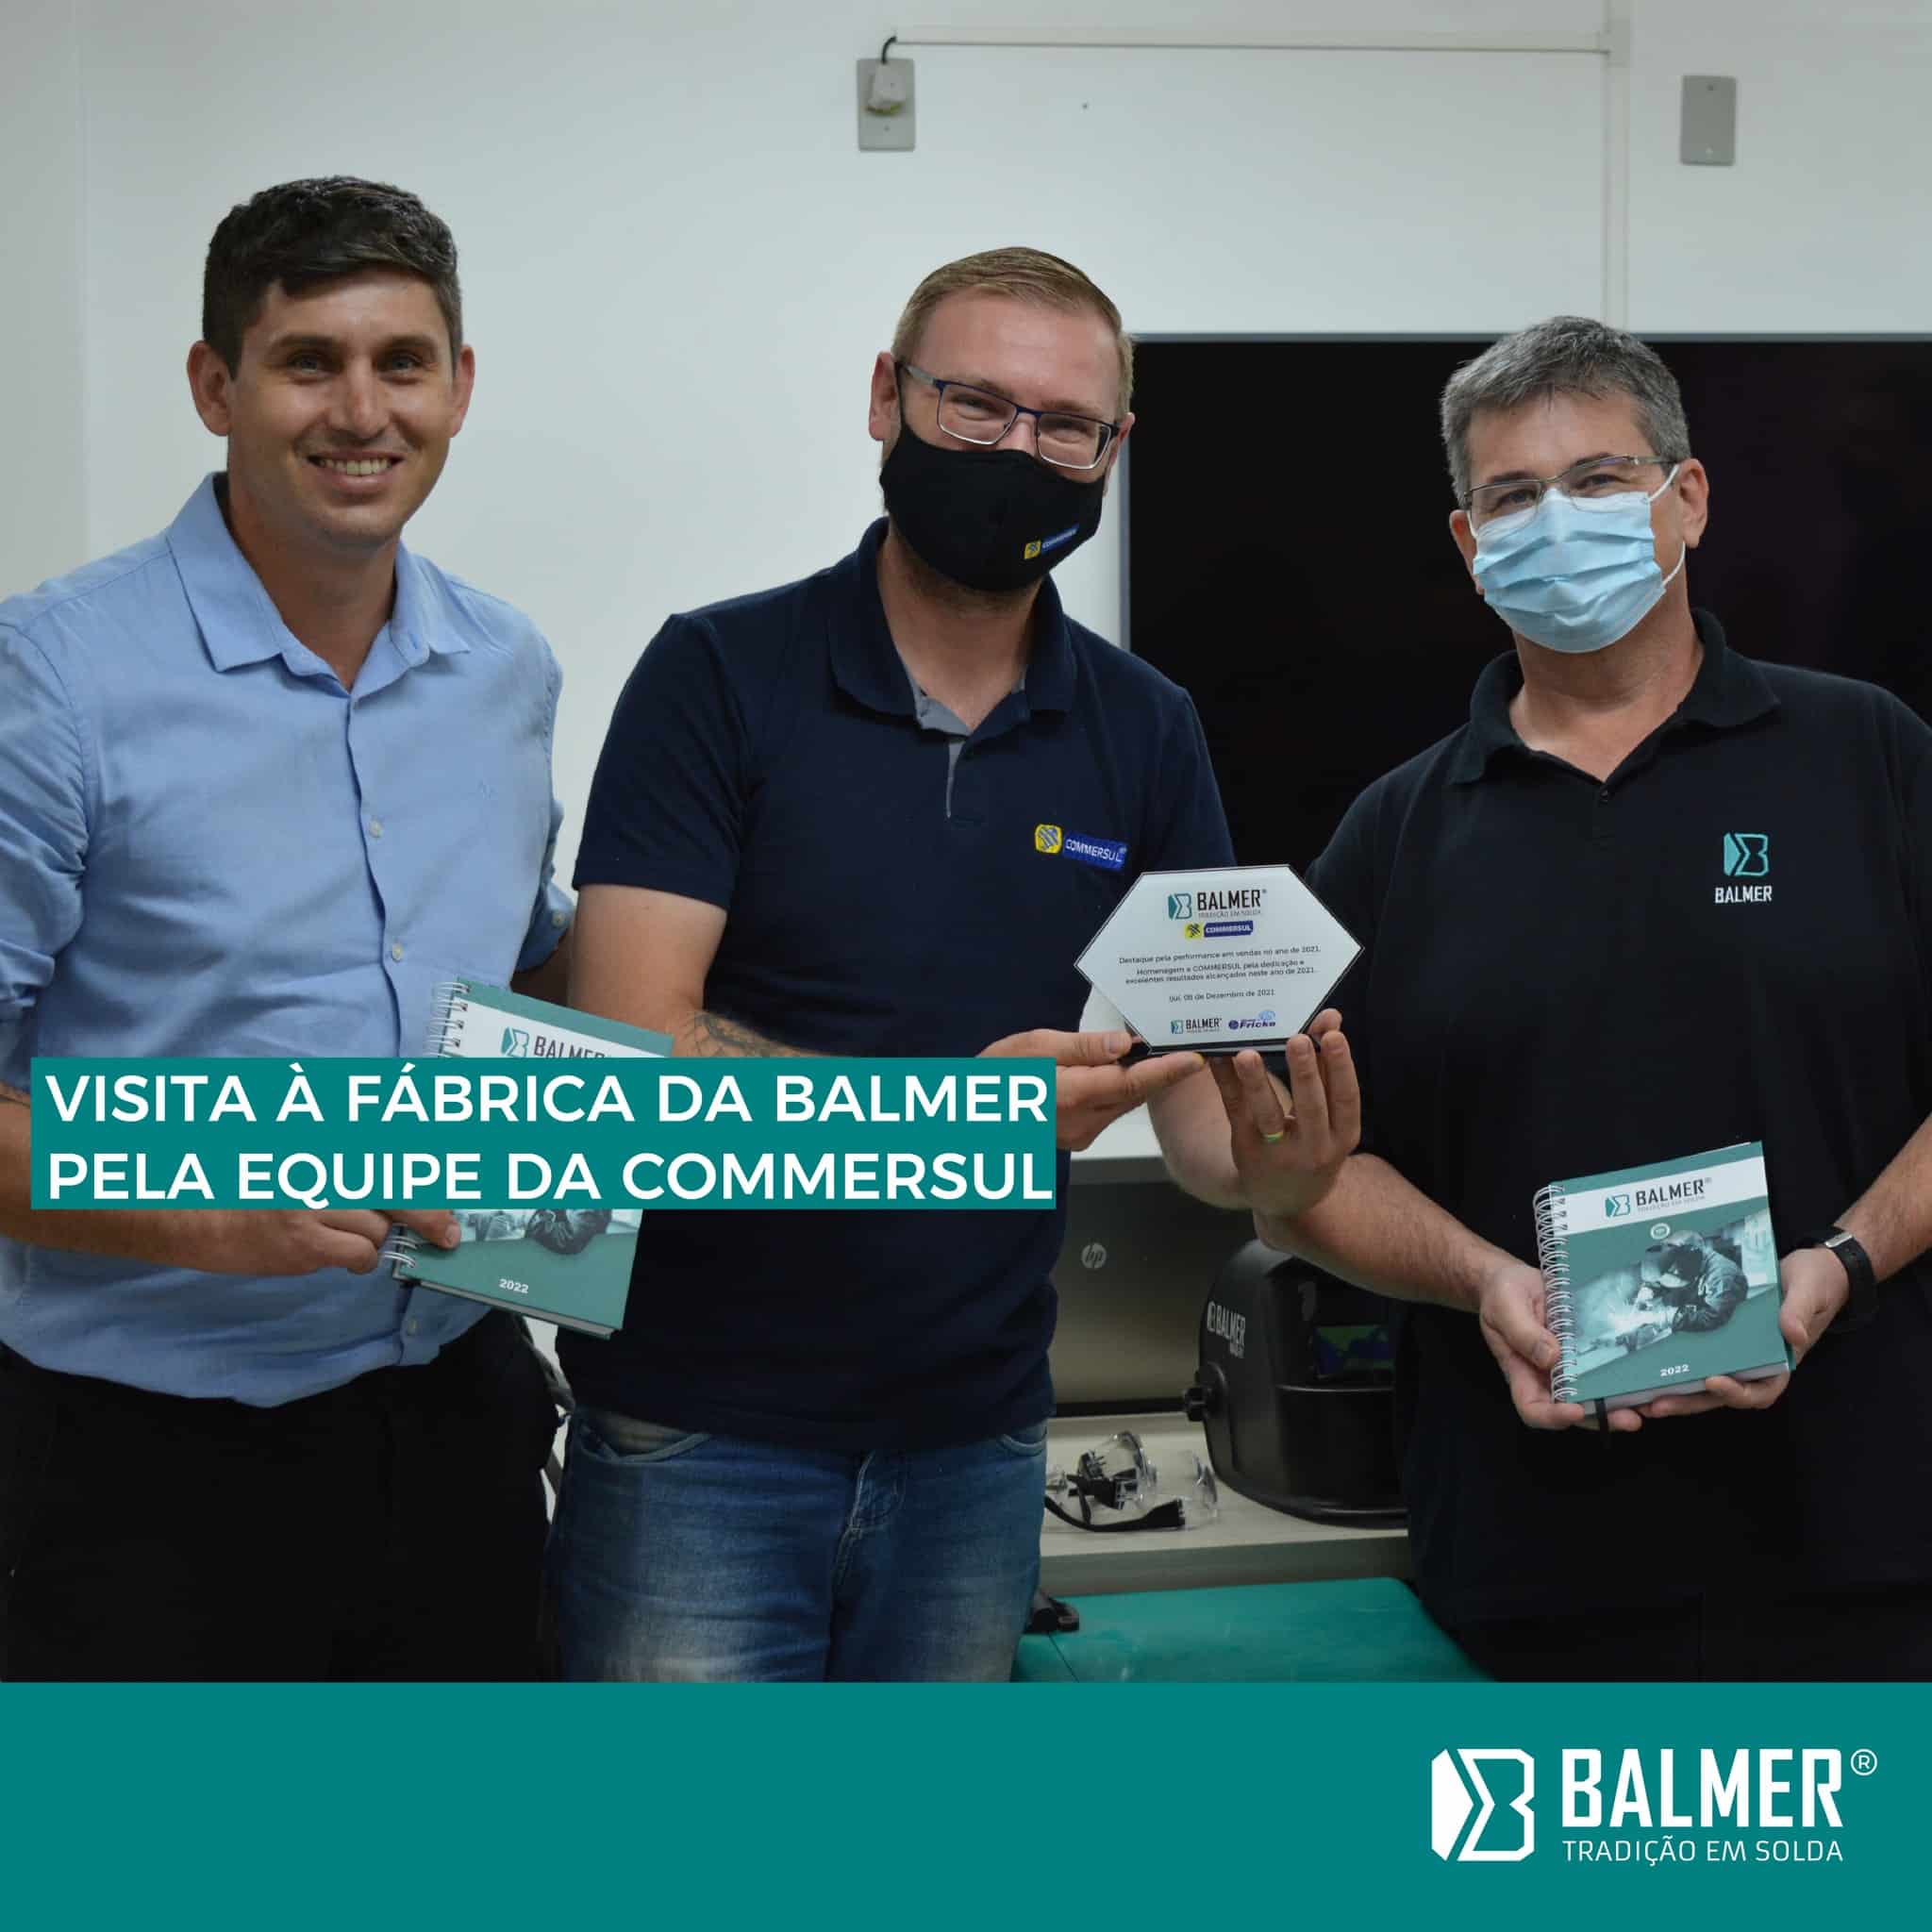 Visita a fbrica da BALMER pela equipe da Commersul